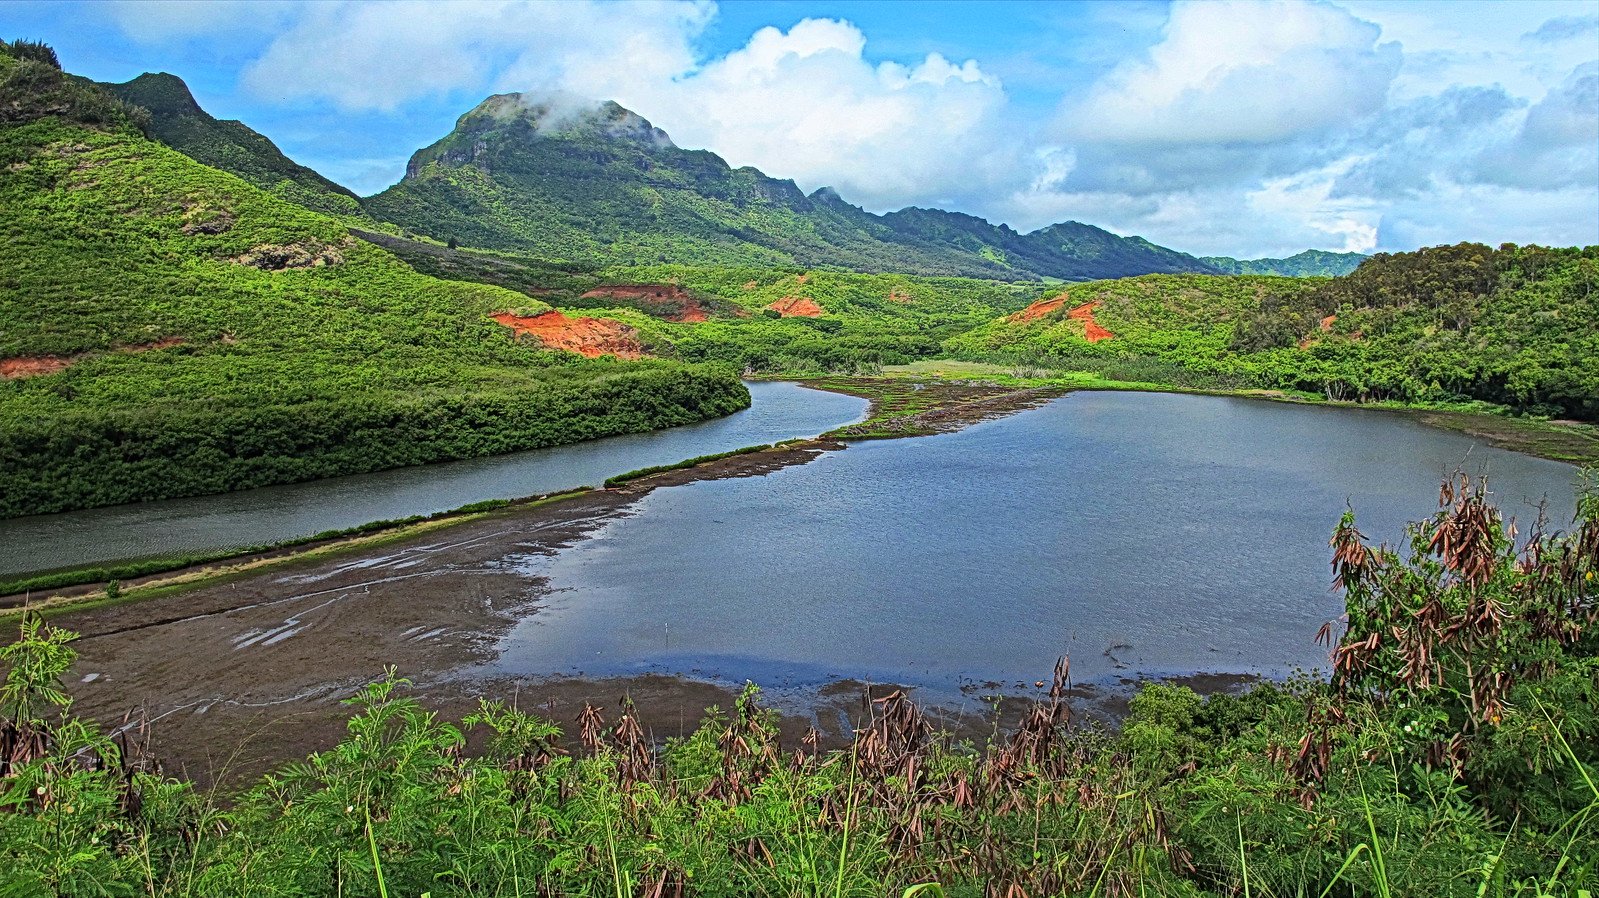 Kauai - Menehune Fishpond - Alakoko - Huleia stream